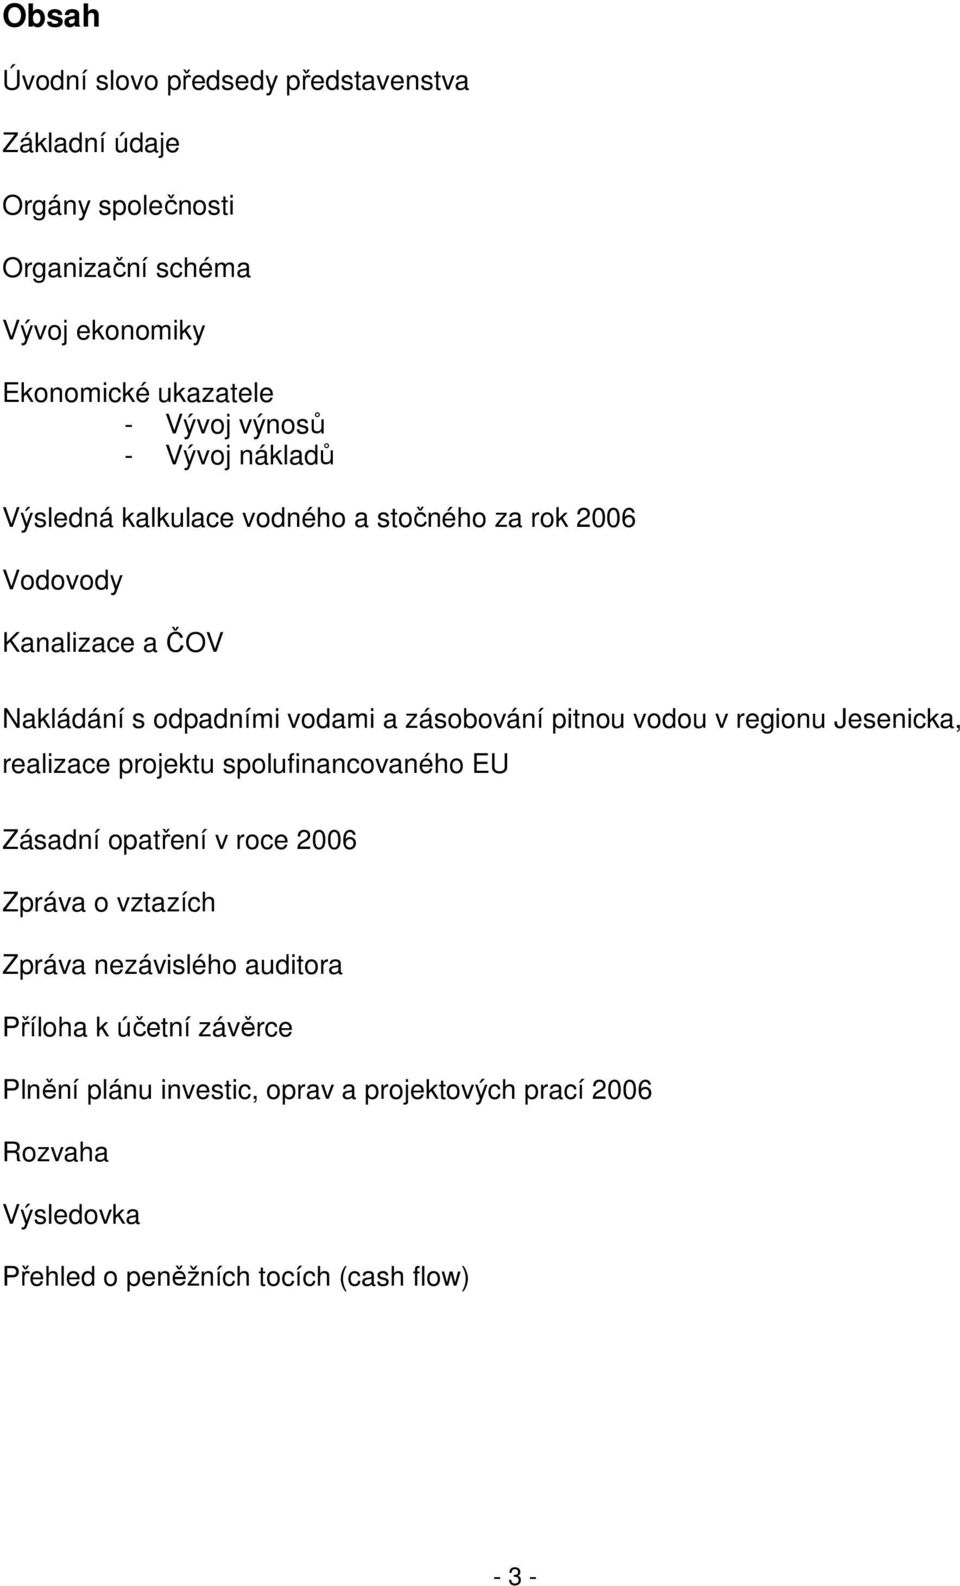 pitnou vodou v regionu Jesenicka, realizace projektu spolufinancovaného EU Zásadní opatření v roce 2006 Zpráva o vztazích Zpráva nezávislého